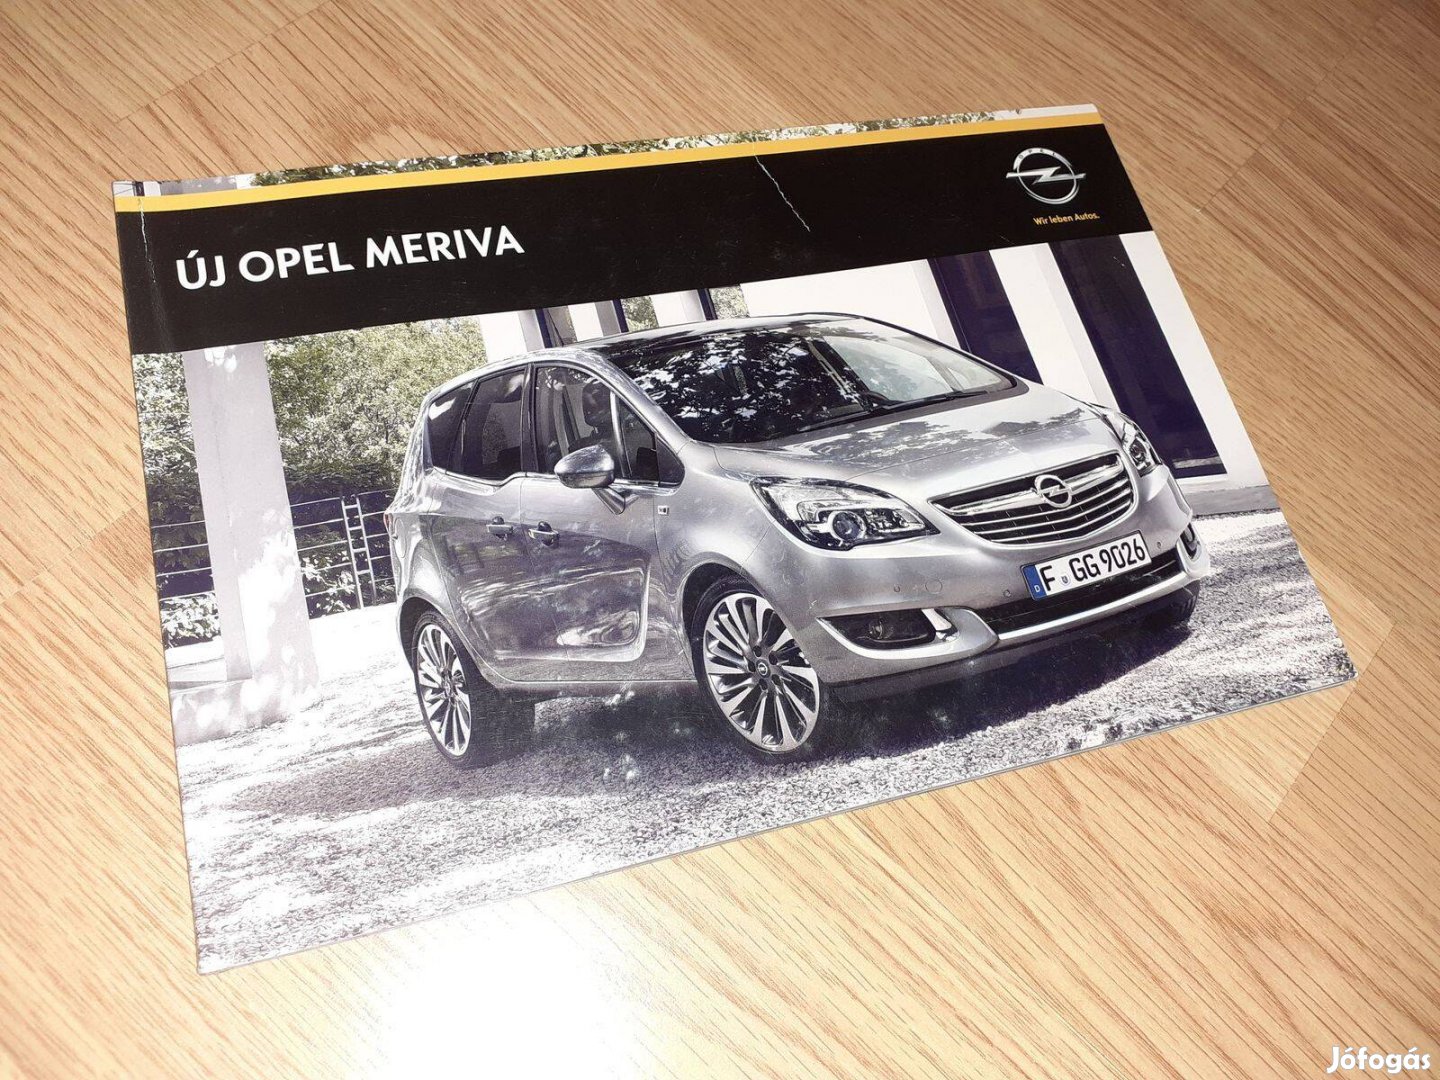 Opel Meriva prospektus - 2013, magyar nyelvű